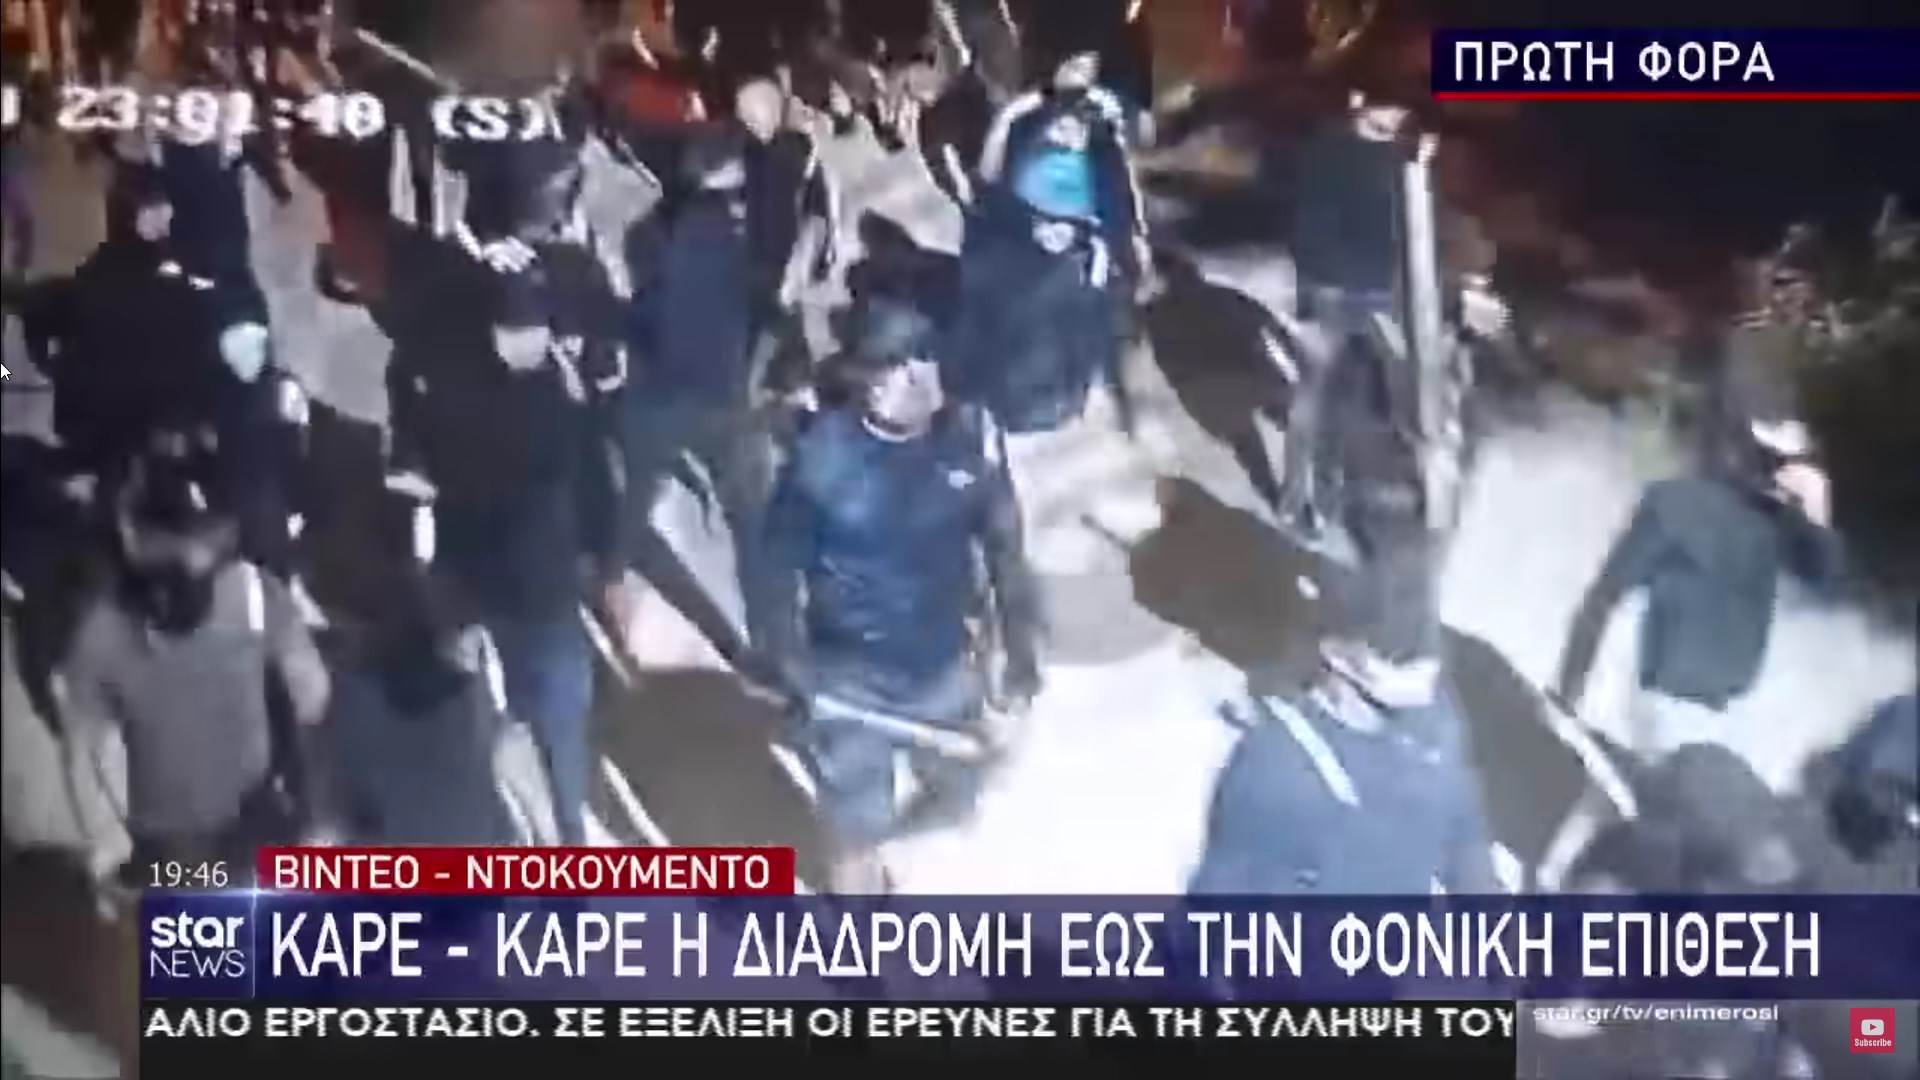  Hrvatski huligani marširali u pratnji policije 